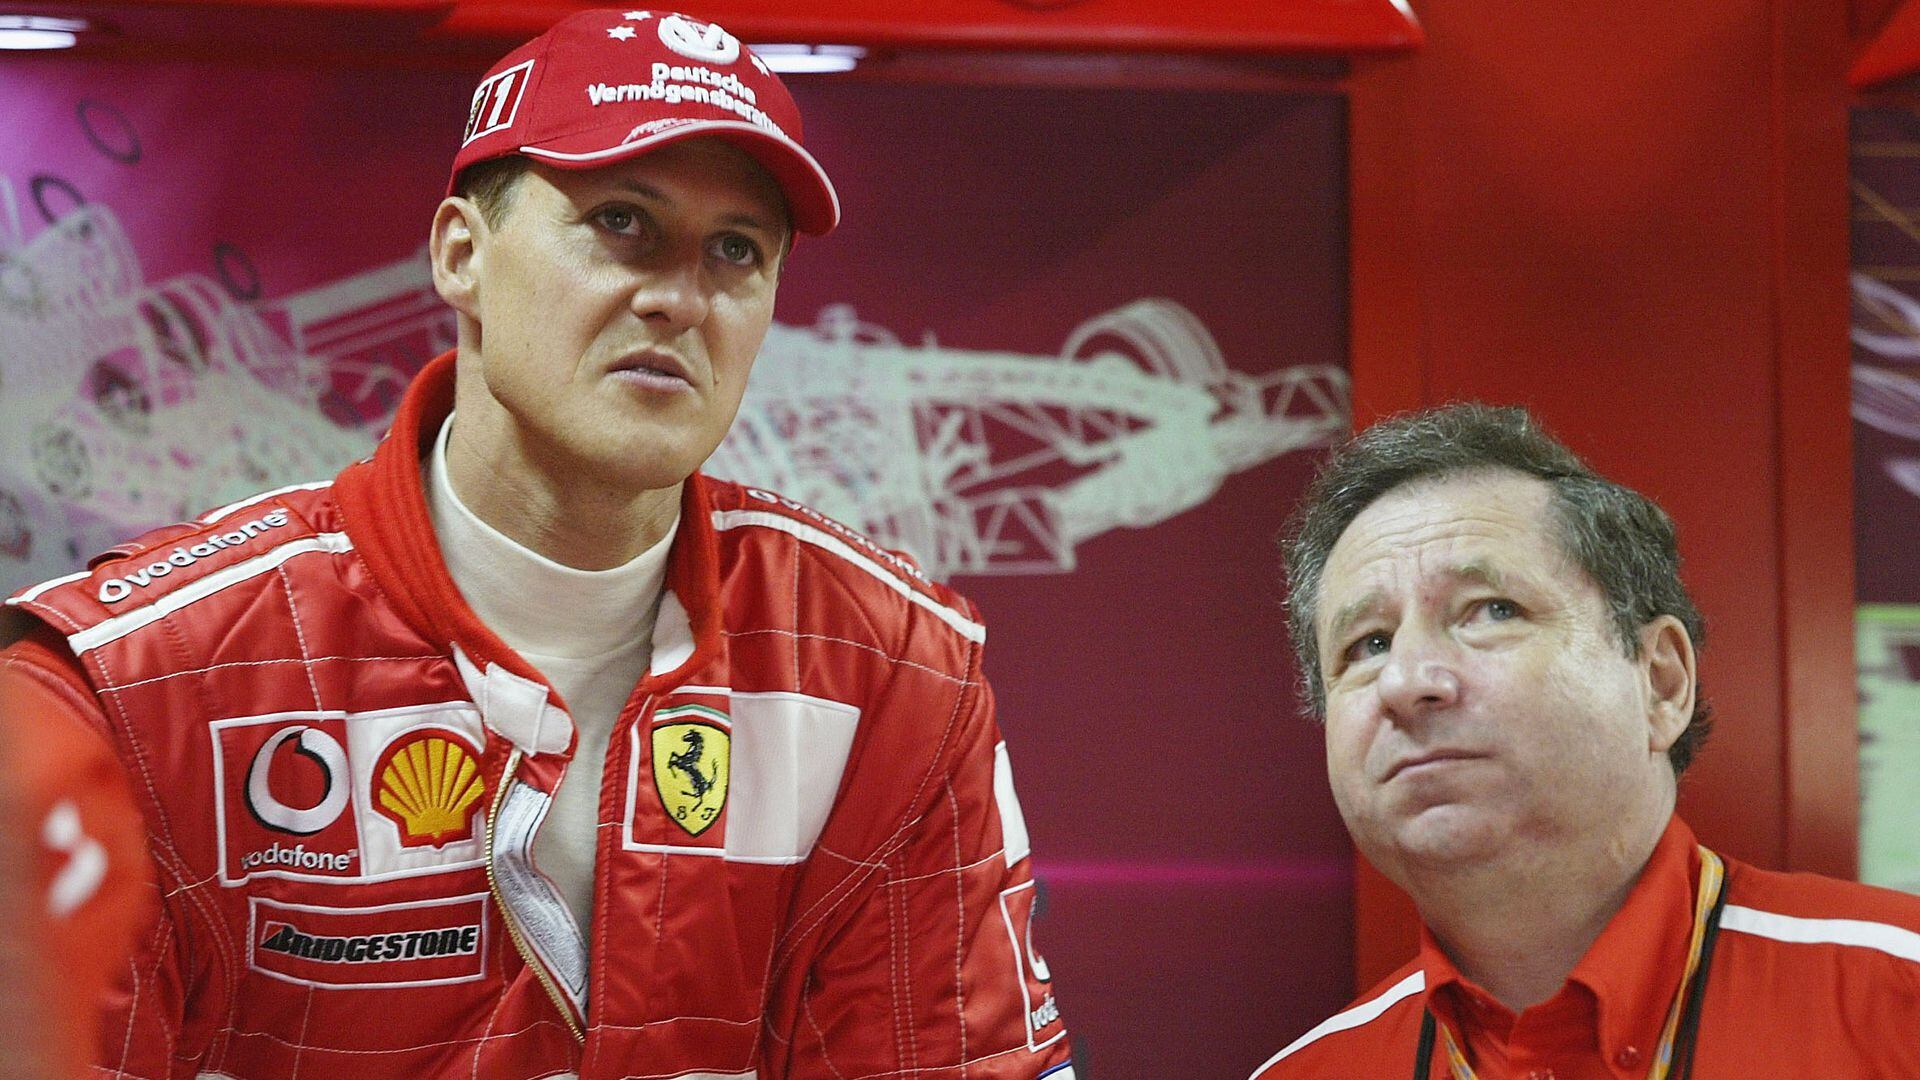 Michael Schumacher junto a Jean Todt en la época de oro de Ferrari (Getty Images)